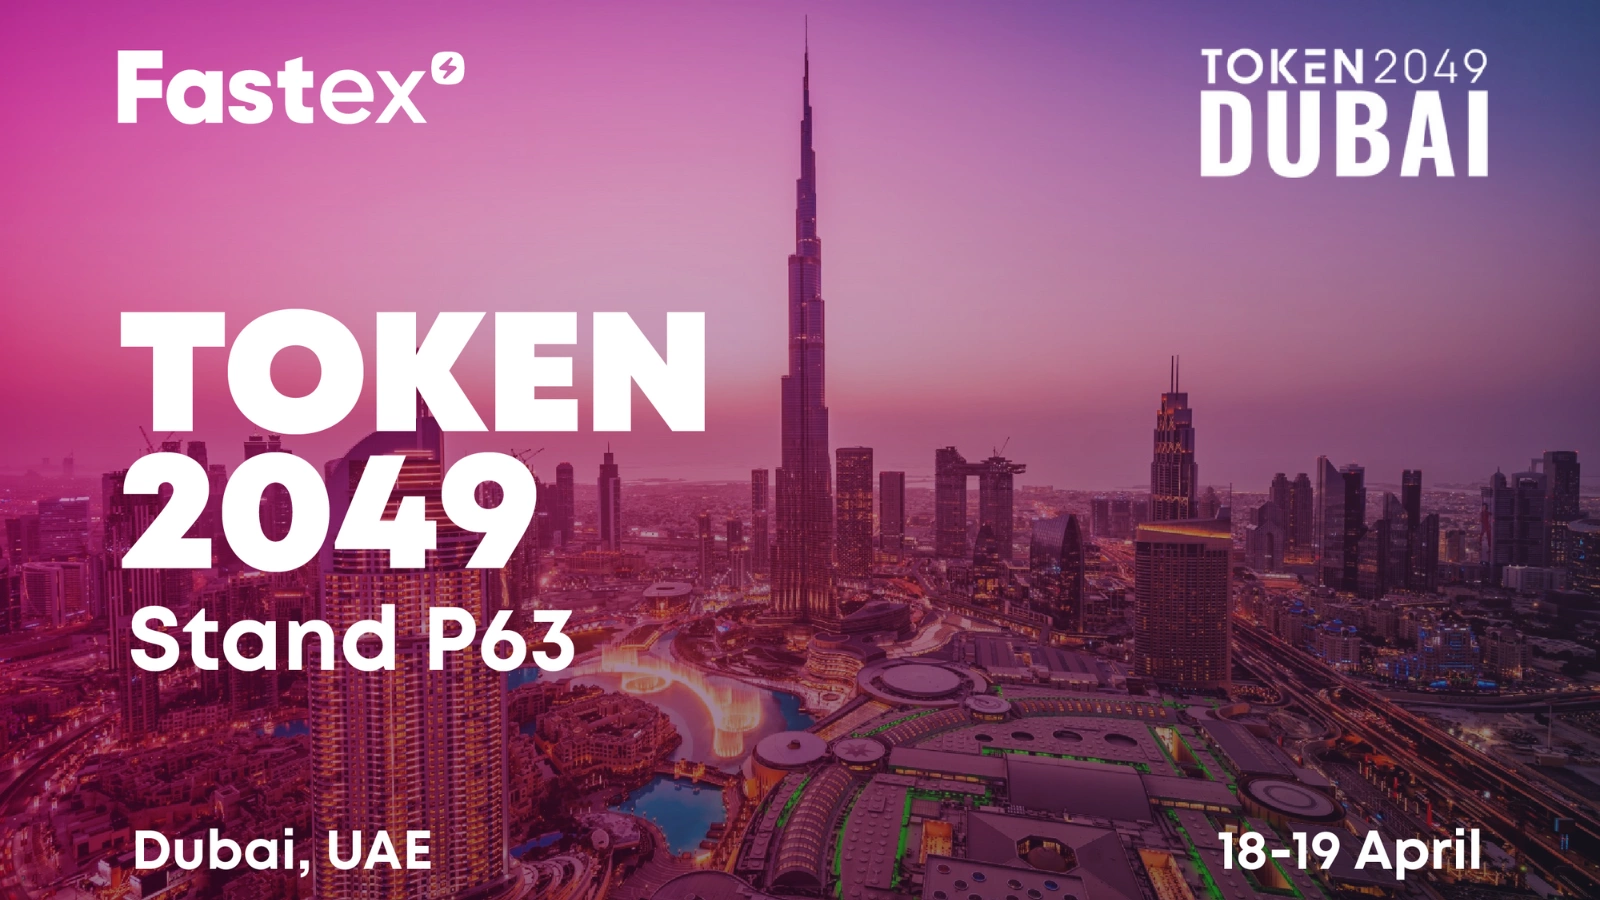 Բացահայտելով նոր հնարավորություններ․ Fastex-ը ապրիլի 18-19-ը  կմասնակցի Դուբայում կայանալիք Token 2049 միջոցառմանը